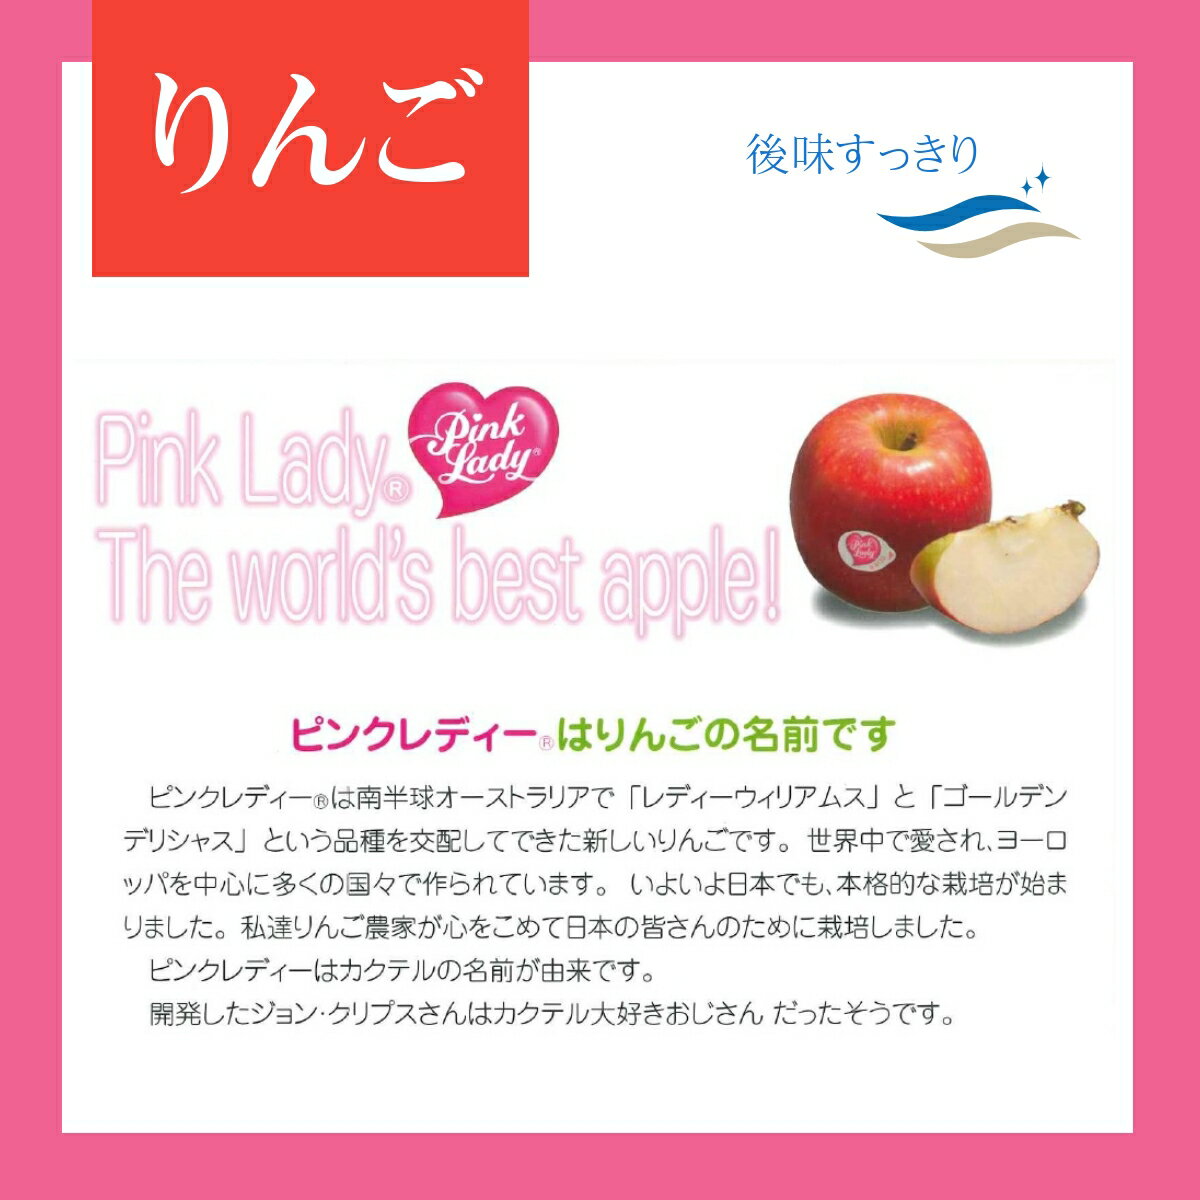 りんご 【志藤農園】 小玉りんご ピンクレディ...の紹介画像3